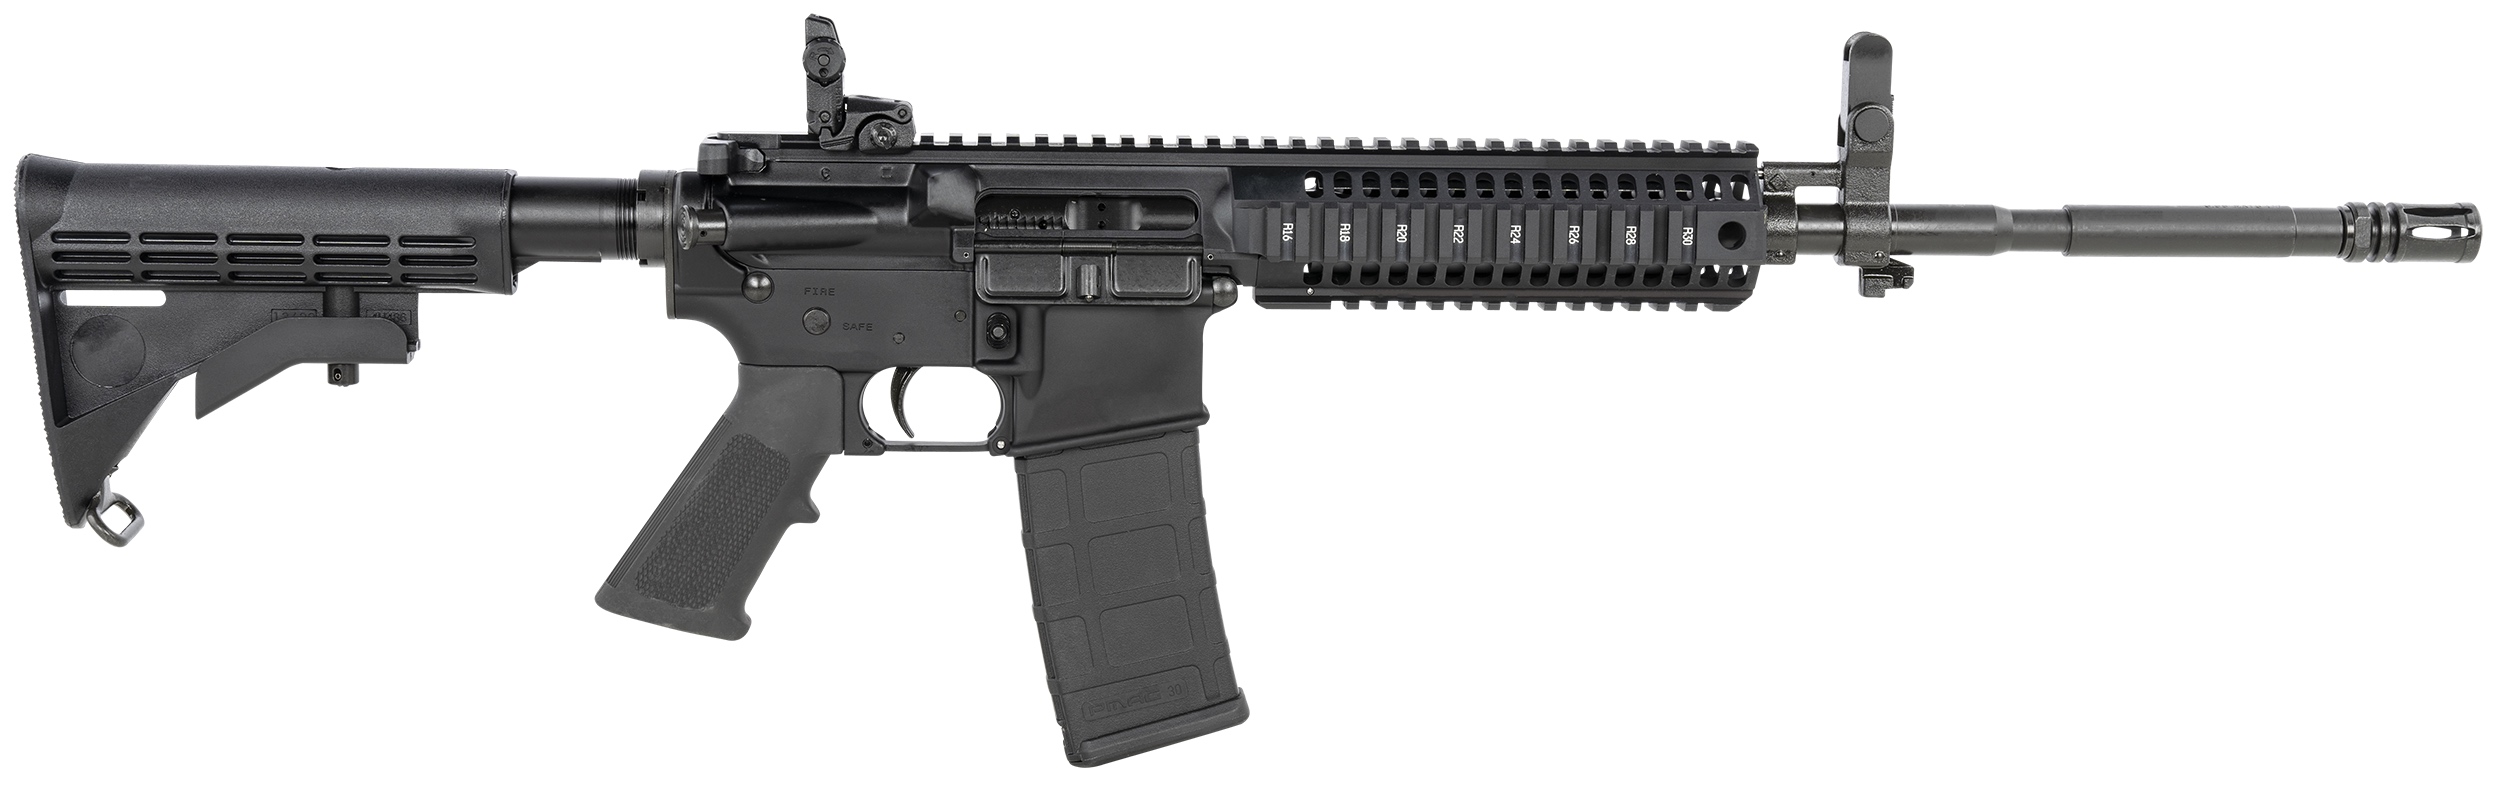 Colt Advanced Law Enforcement M4 Carbine (Monolithic Upper)